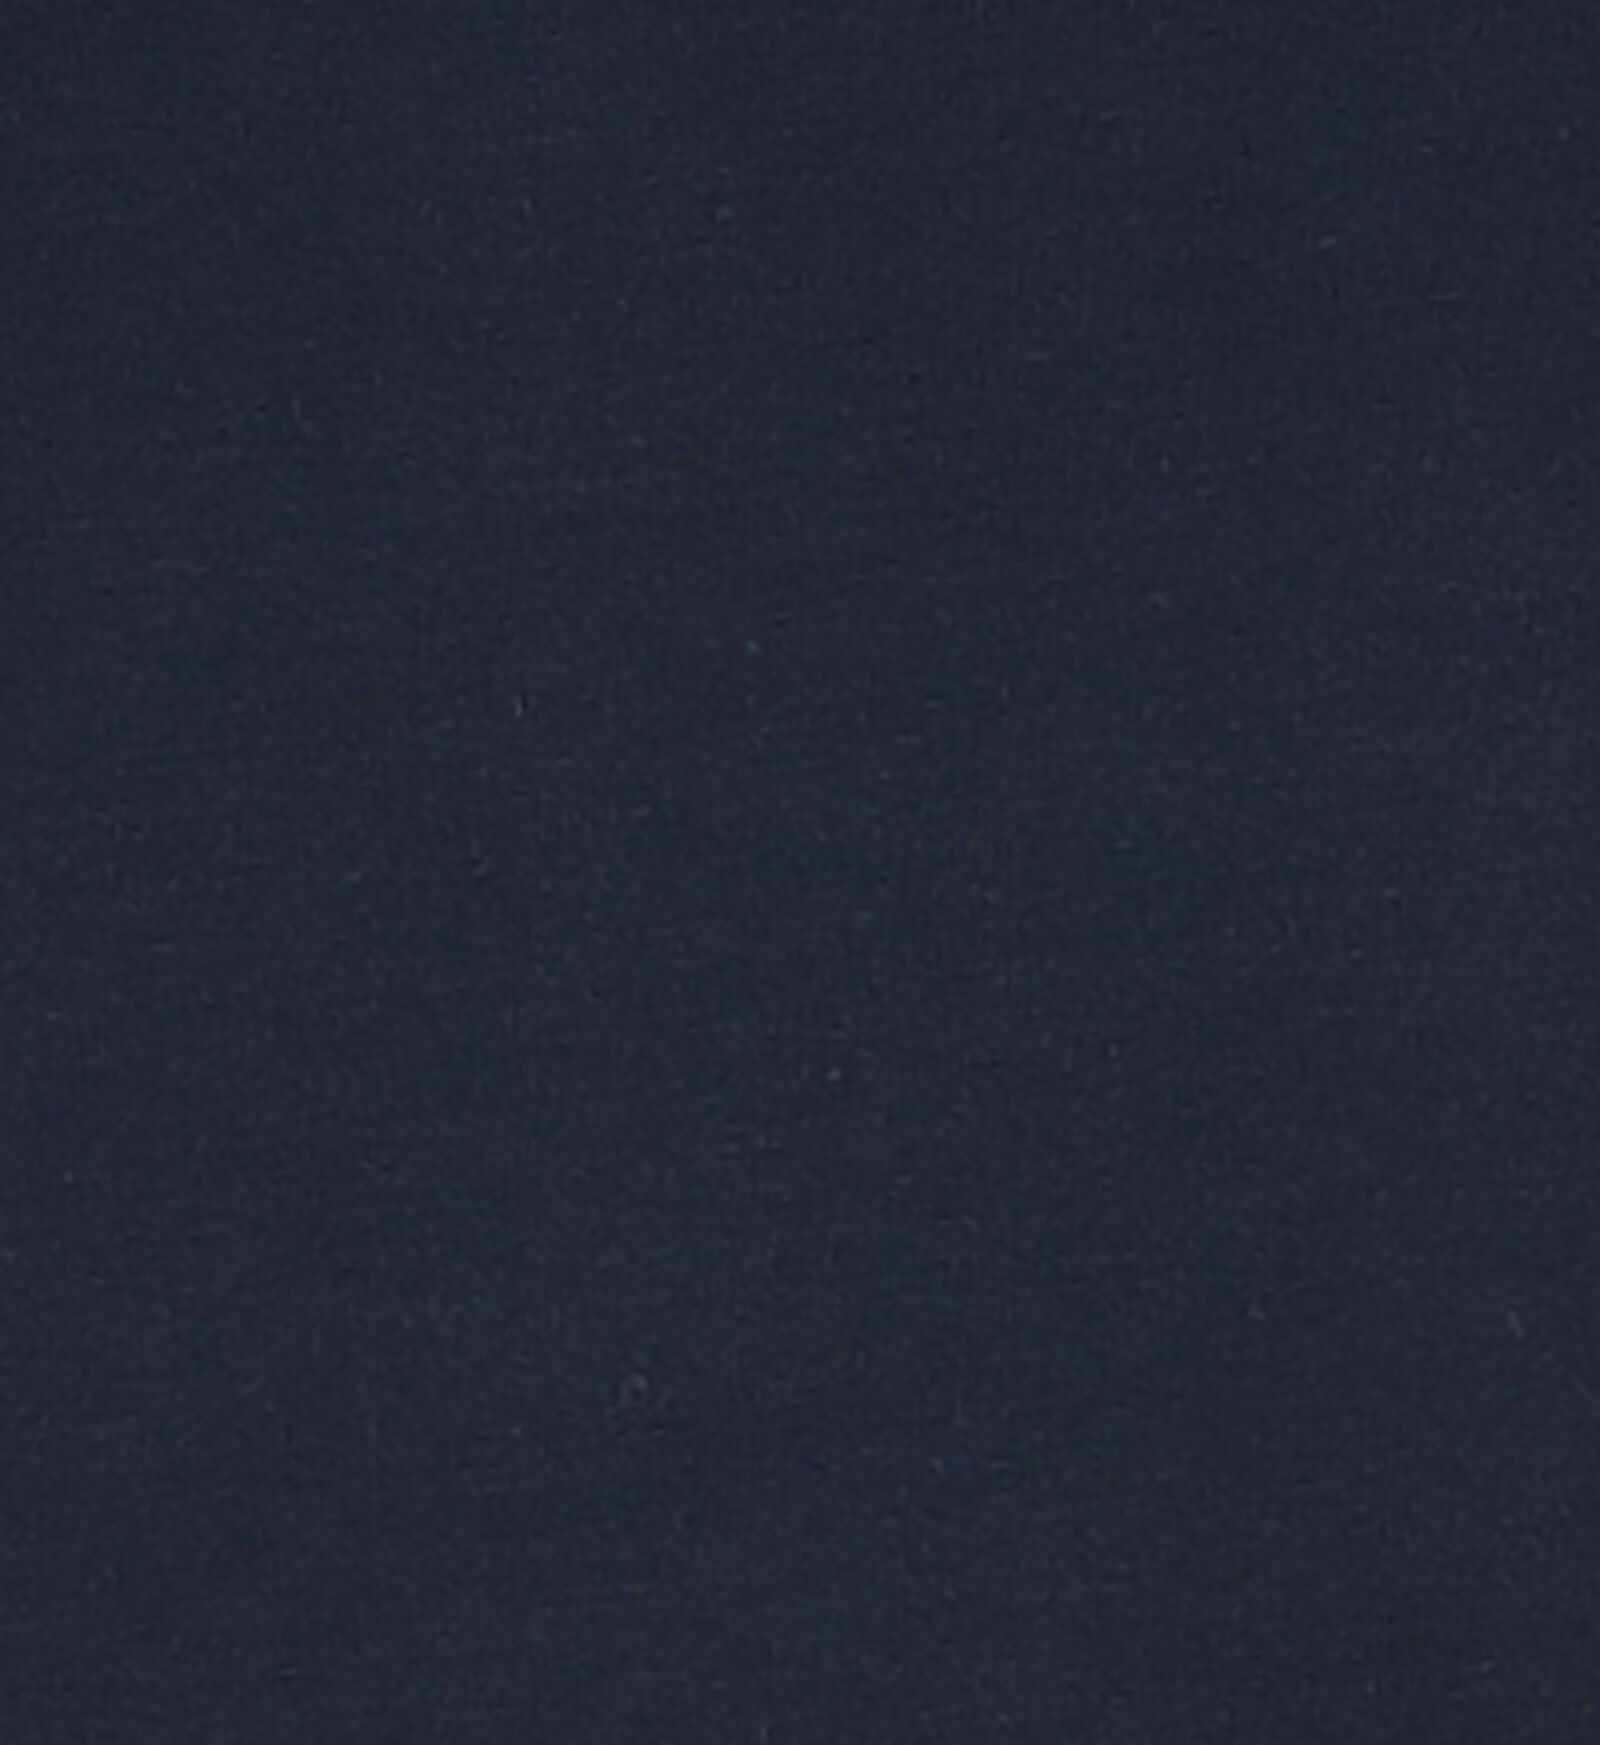 dameshemd donkerblauw donkerblauw - 1000018550 - HEMA